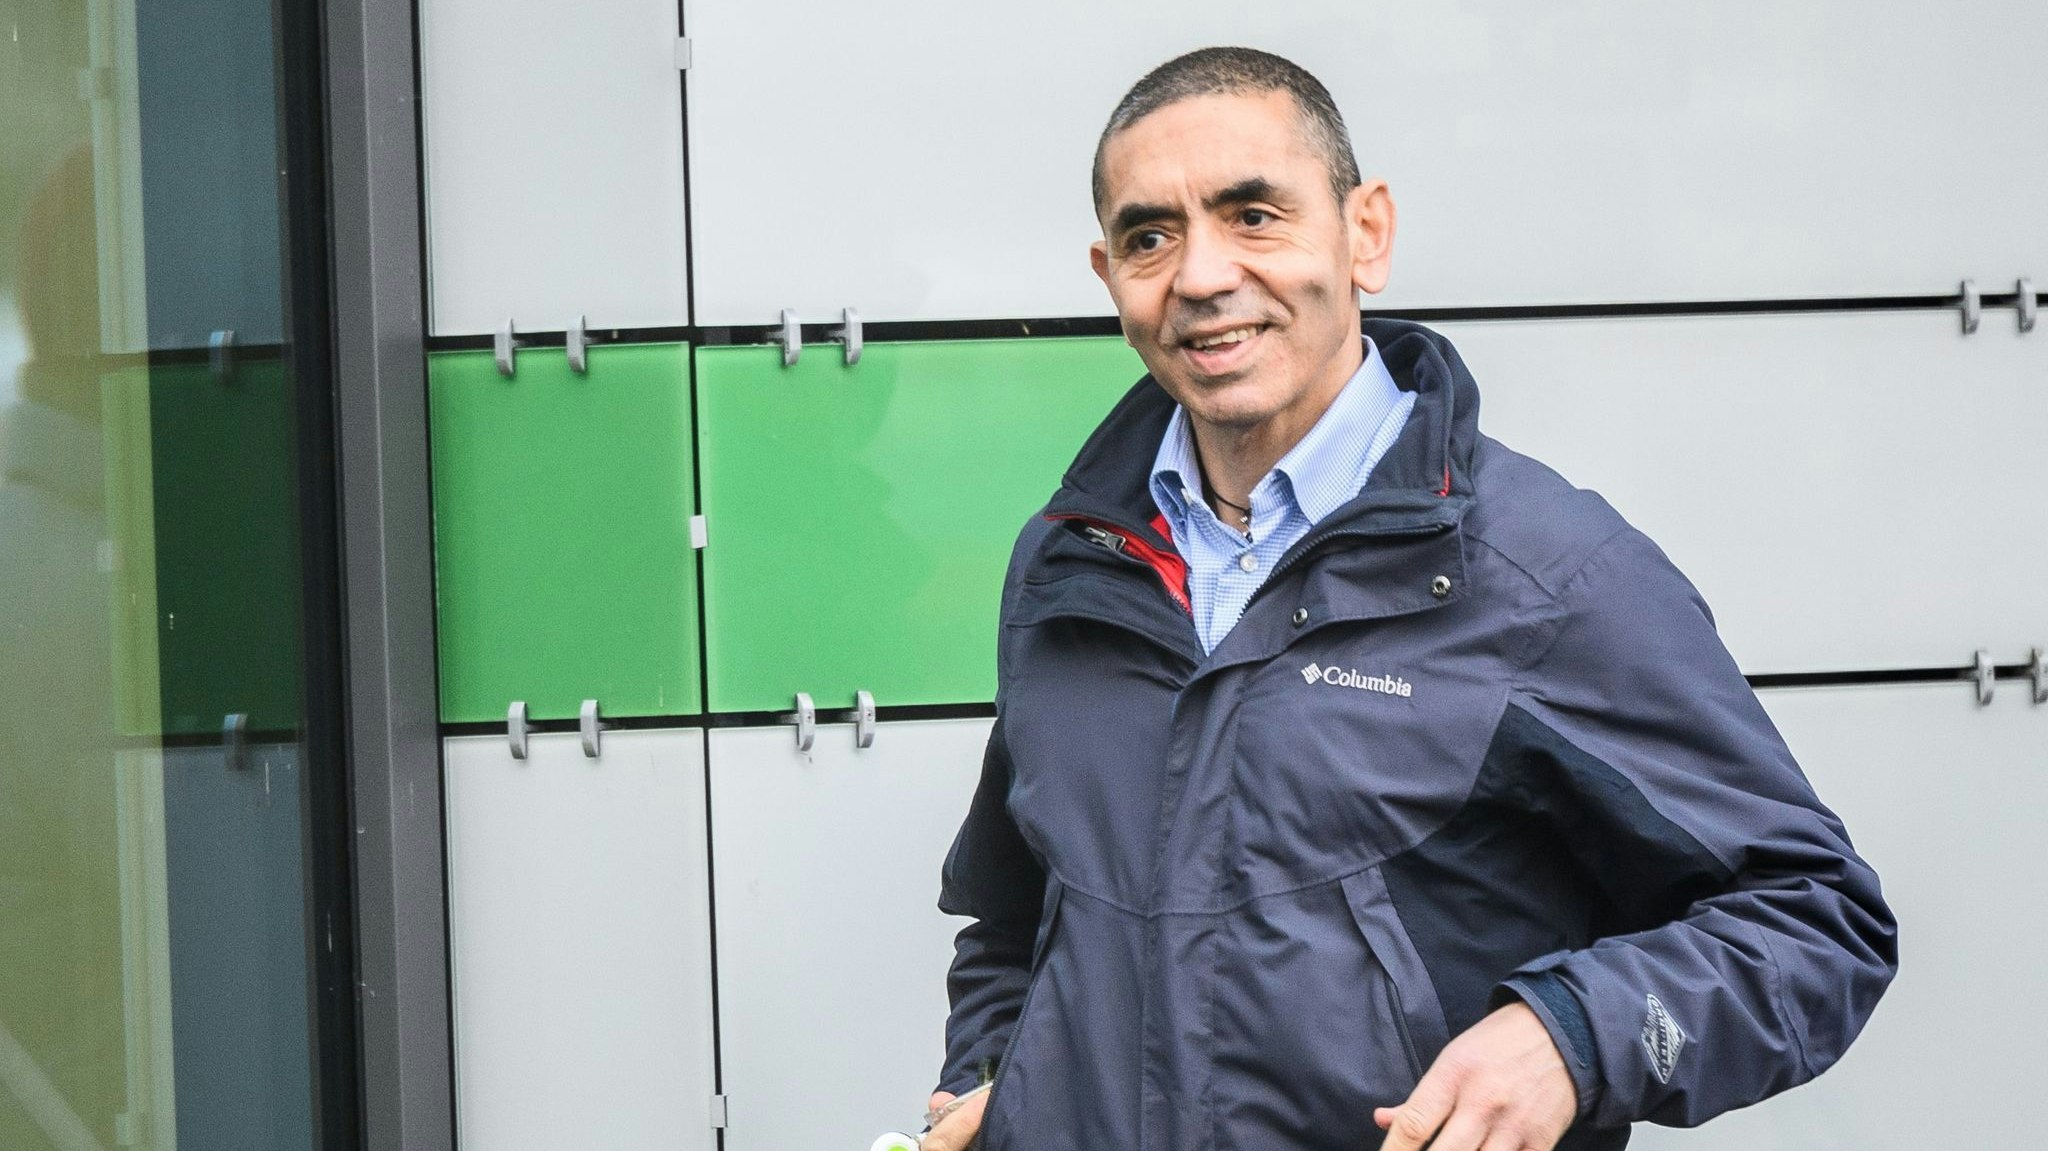 Ugur Sahin, Mitgründer und Vorstandsvorsitzender des Unternehmens Biontech, auf dem Firmengelände in Mainz. Foto: dpa/Arnold